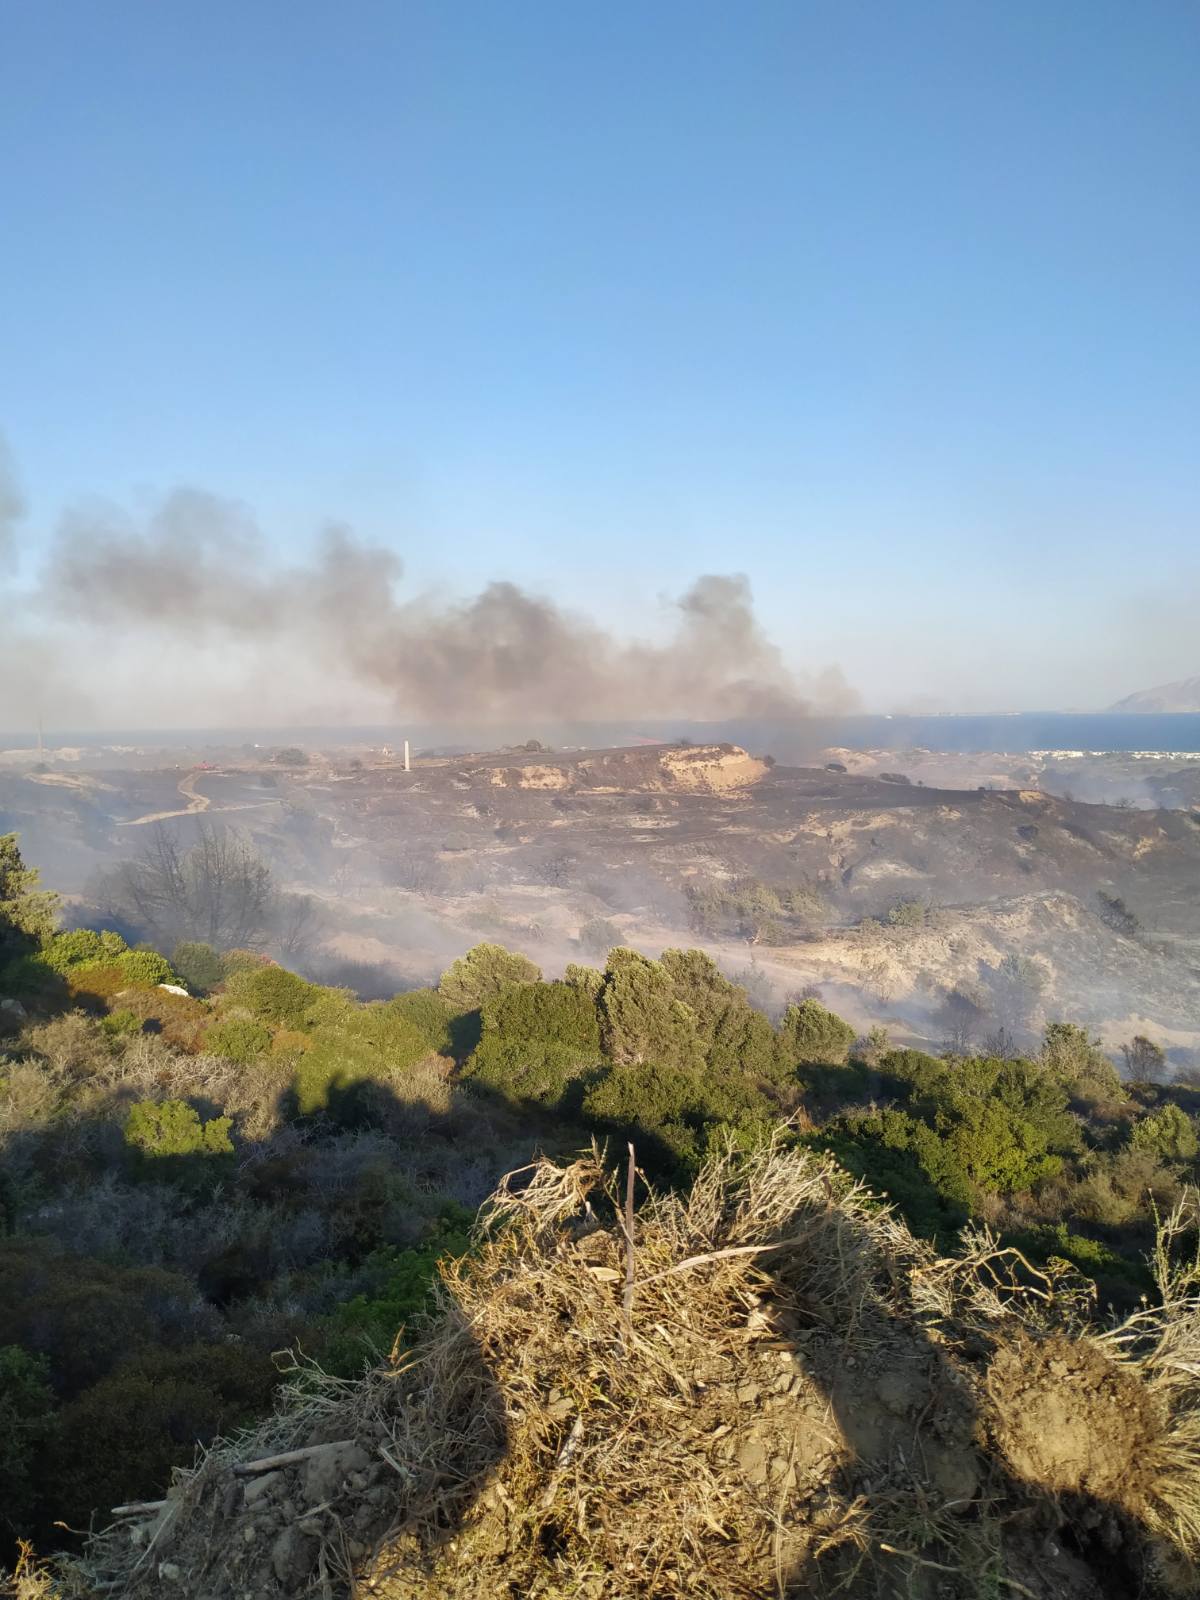 Πυρκαγιά σε δασική έκταση στην περιοχή Μαστιχάρι στην Κω